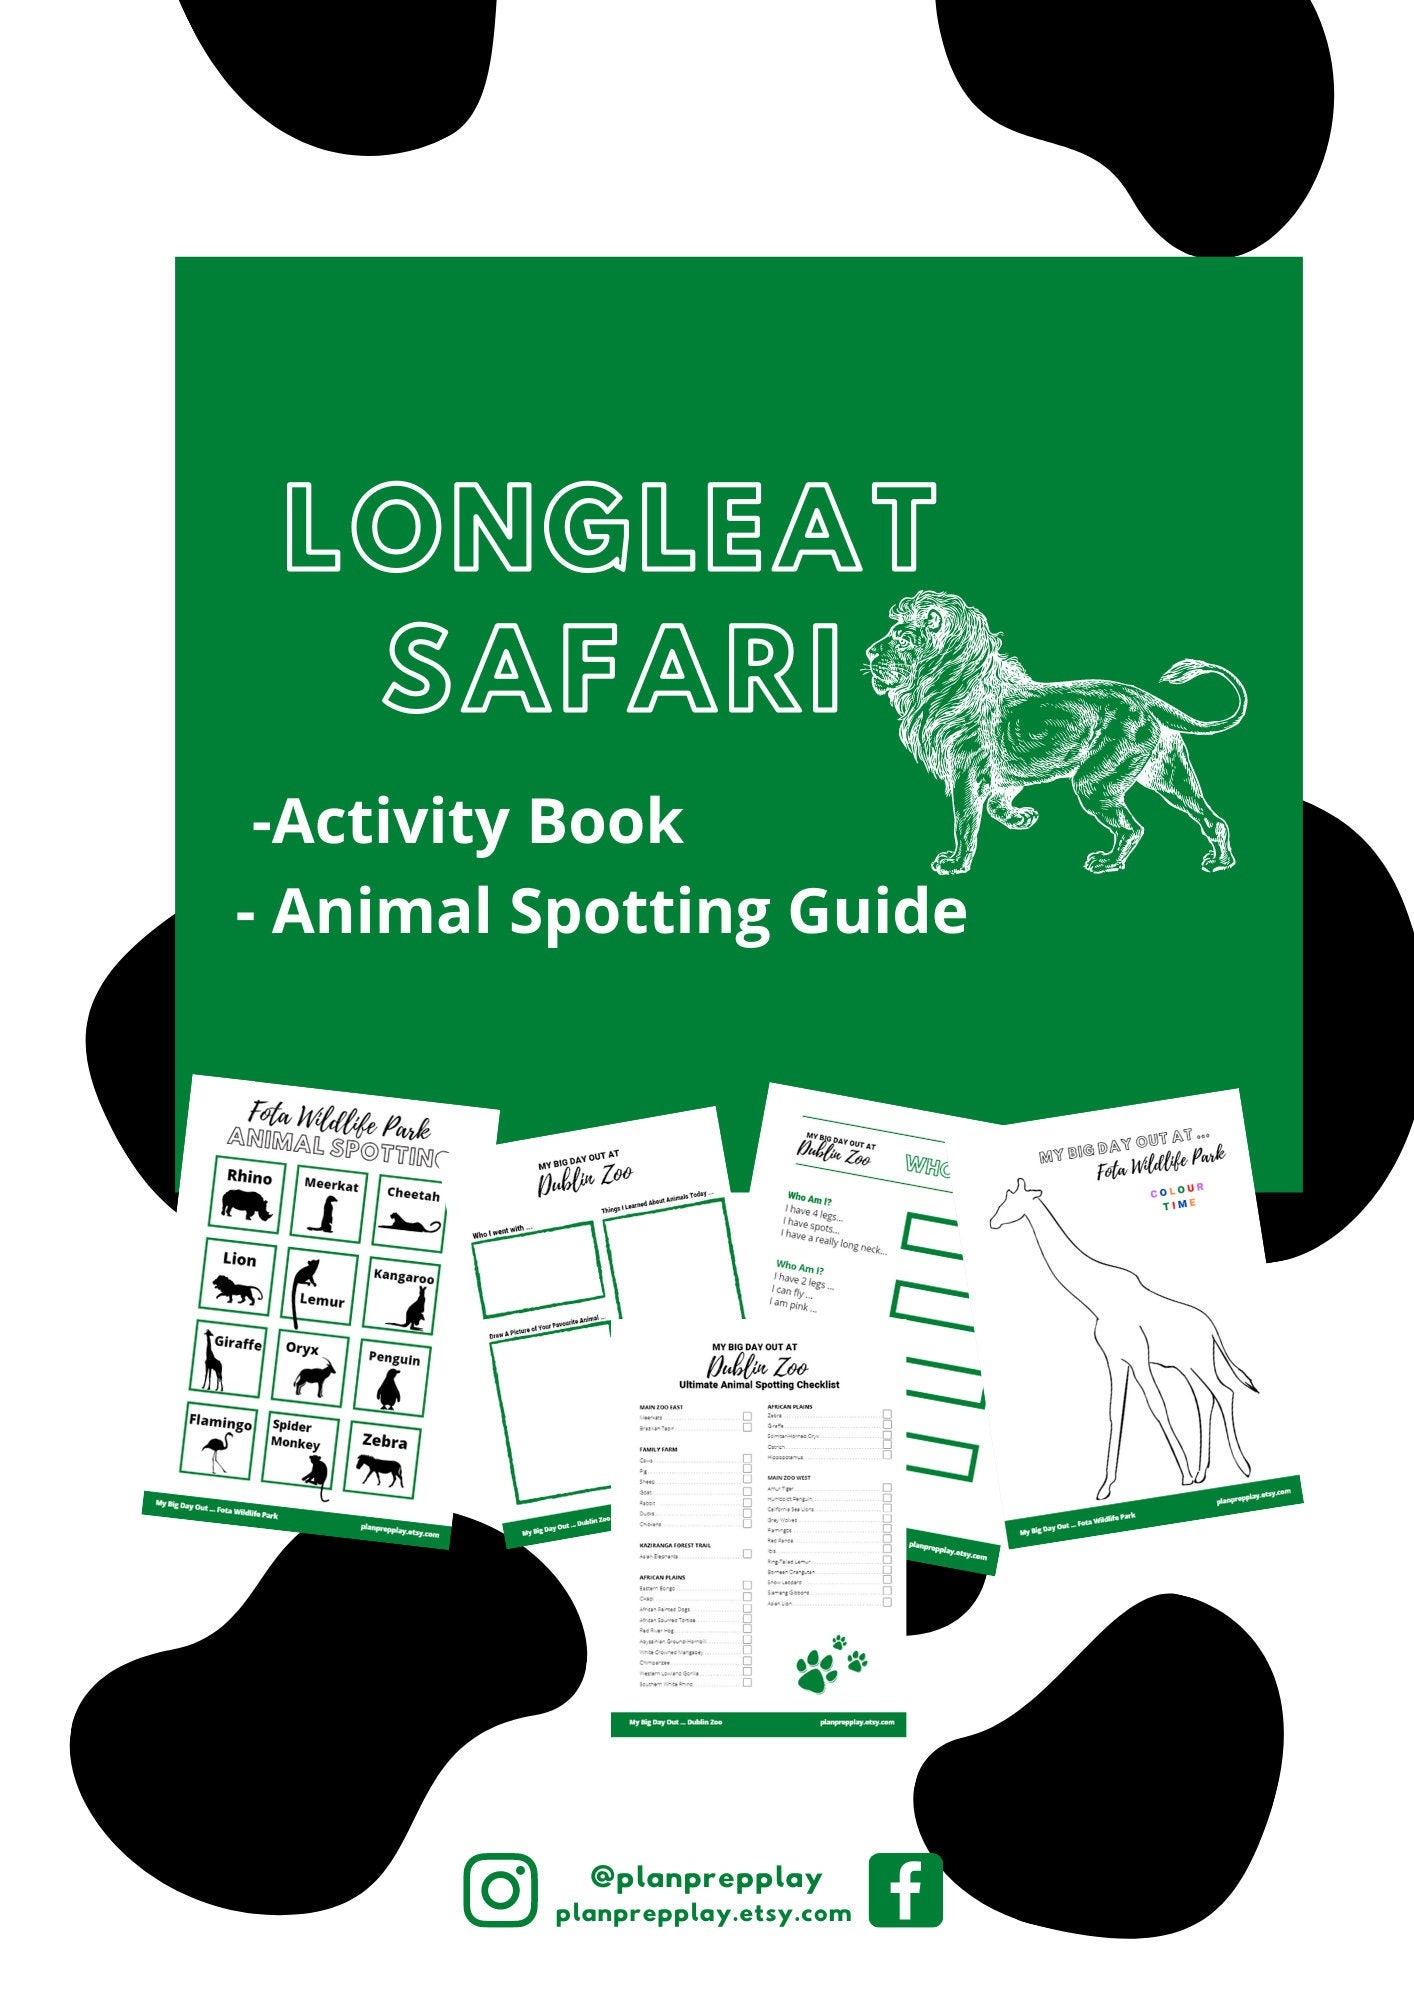 longleat book safari time